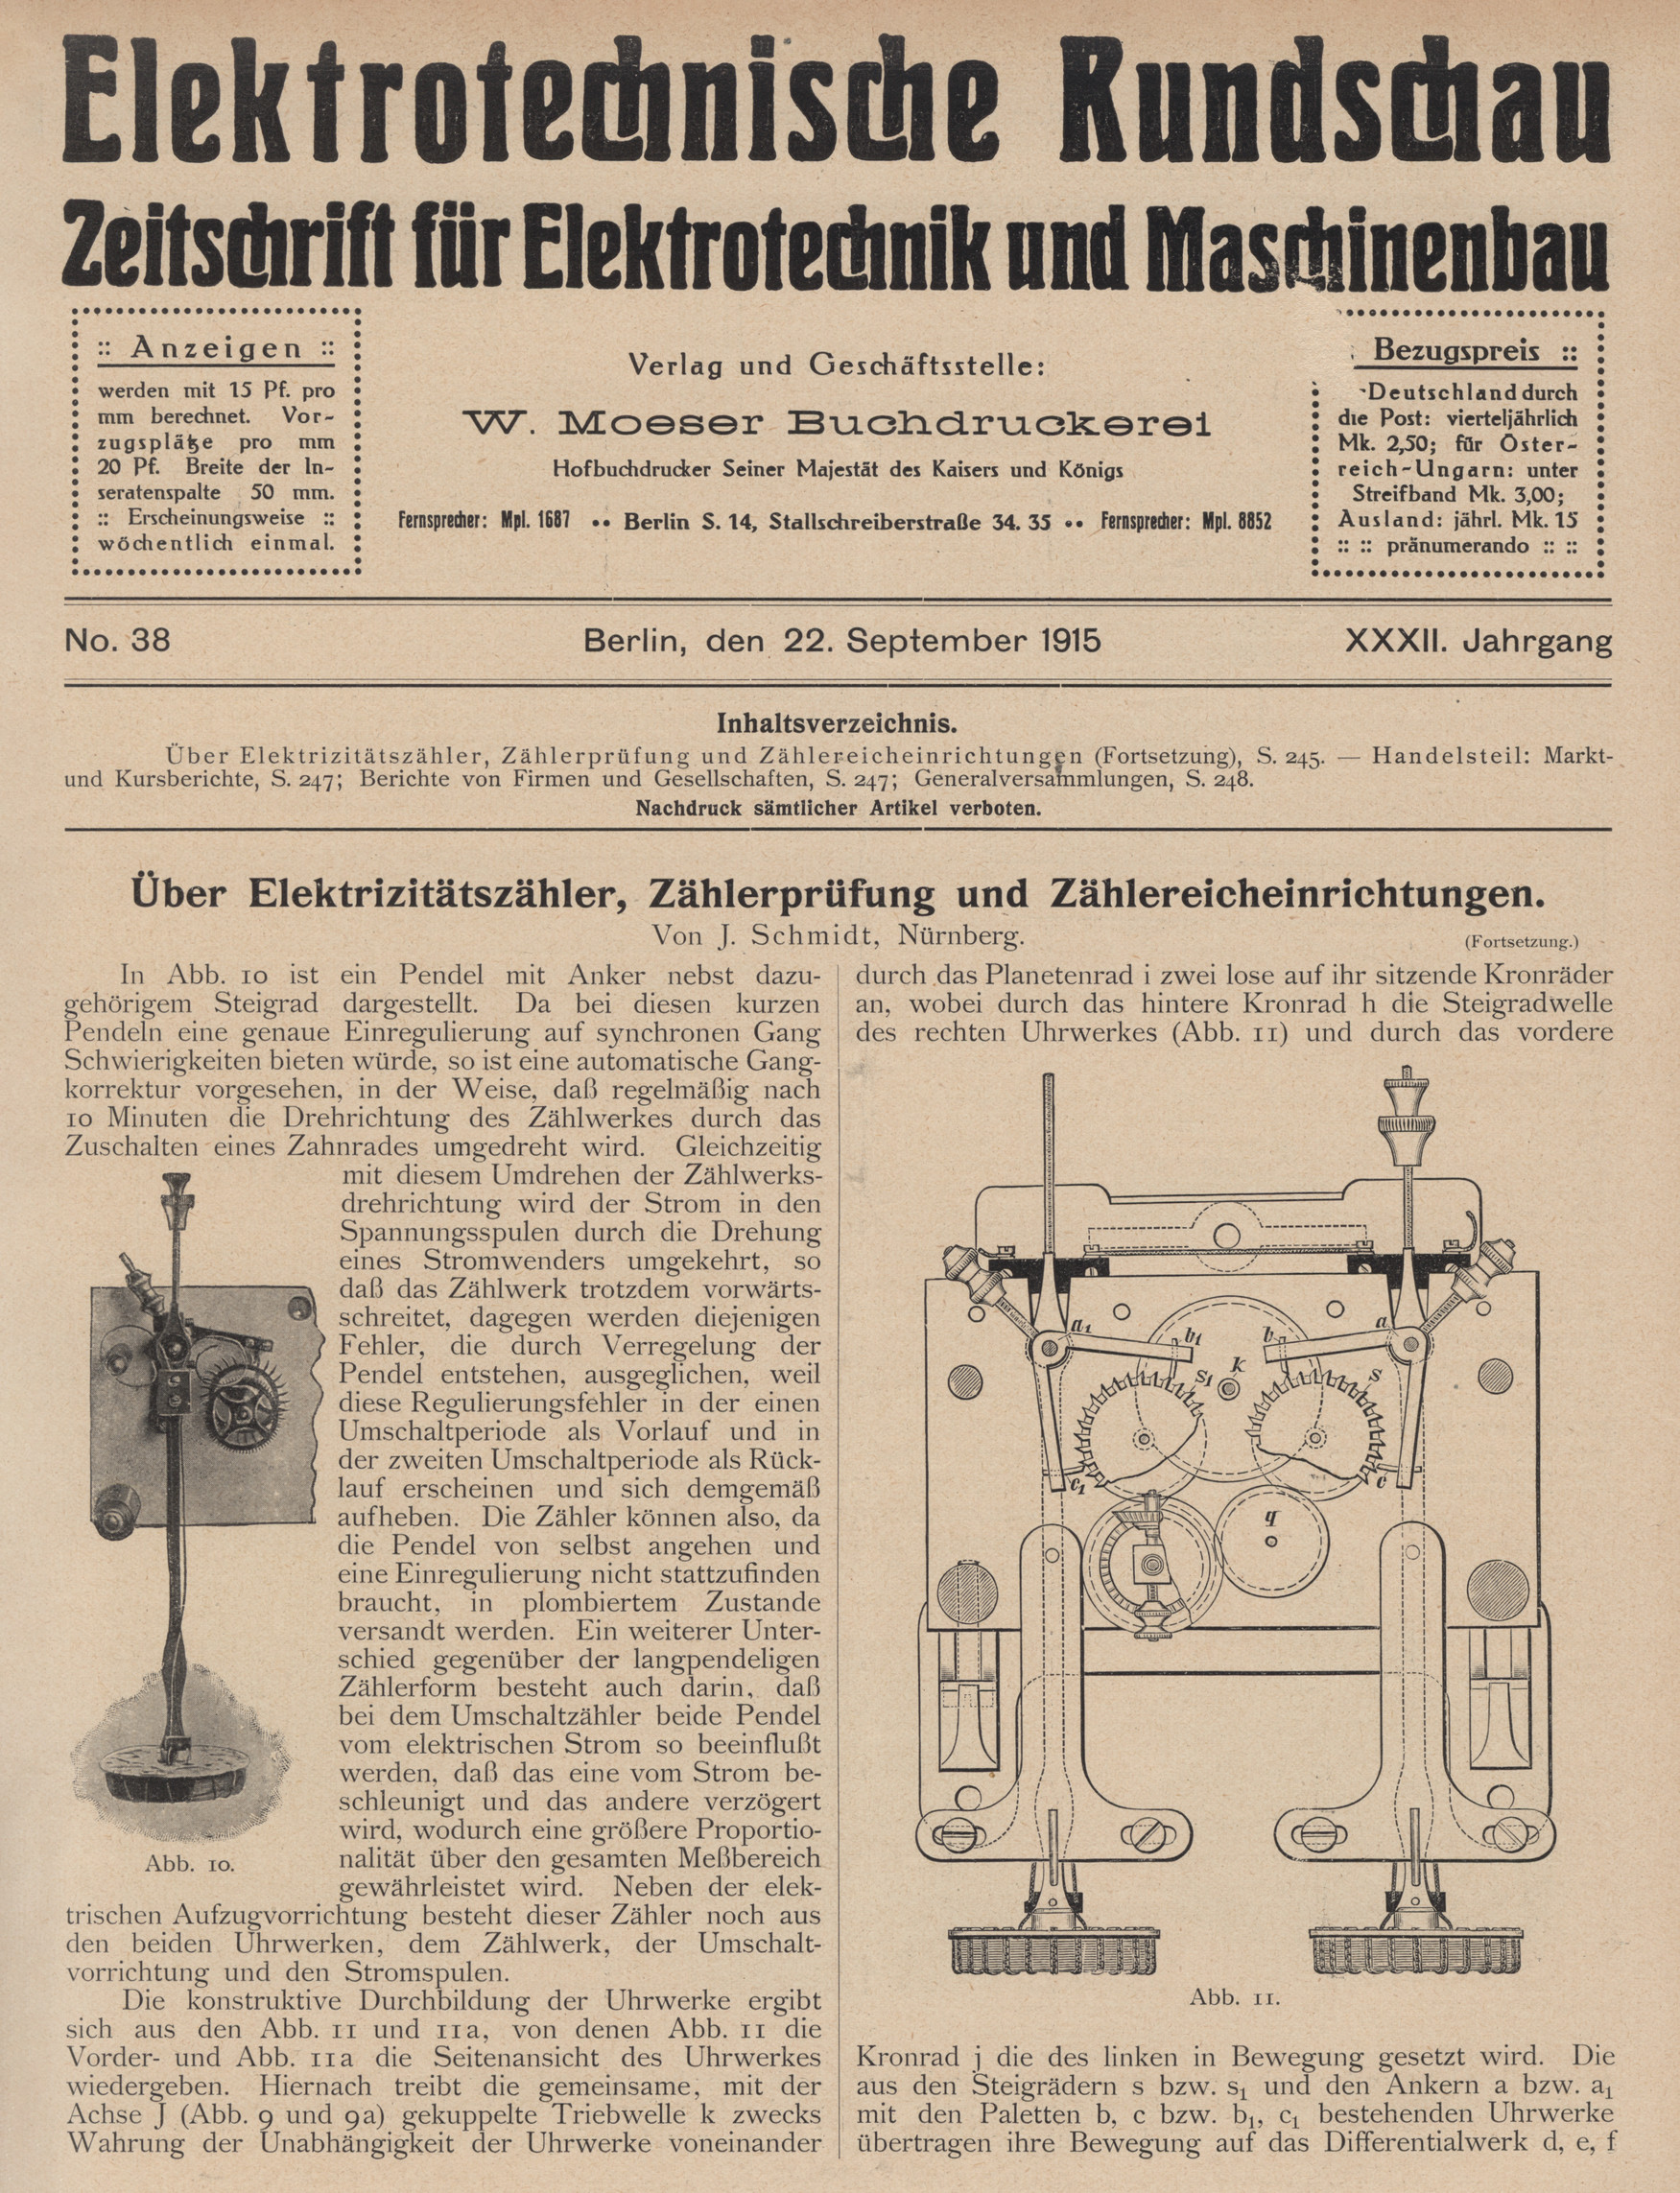 Elektrotechnische Rundschau : Zeitschrift für Elektrotechnik und Maschinenbau + Polytechnische Rundschau, No. 38, XXXII. Jahrgang